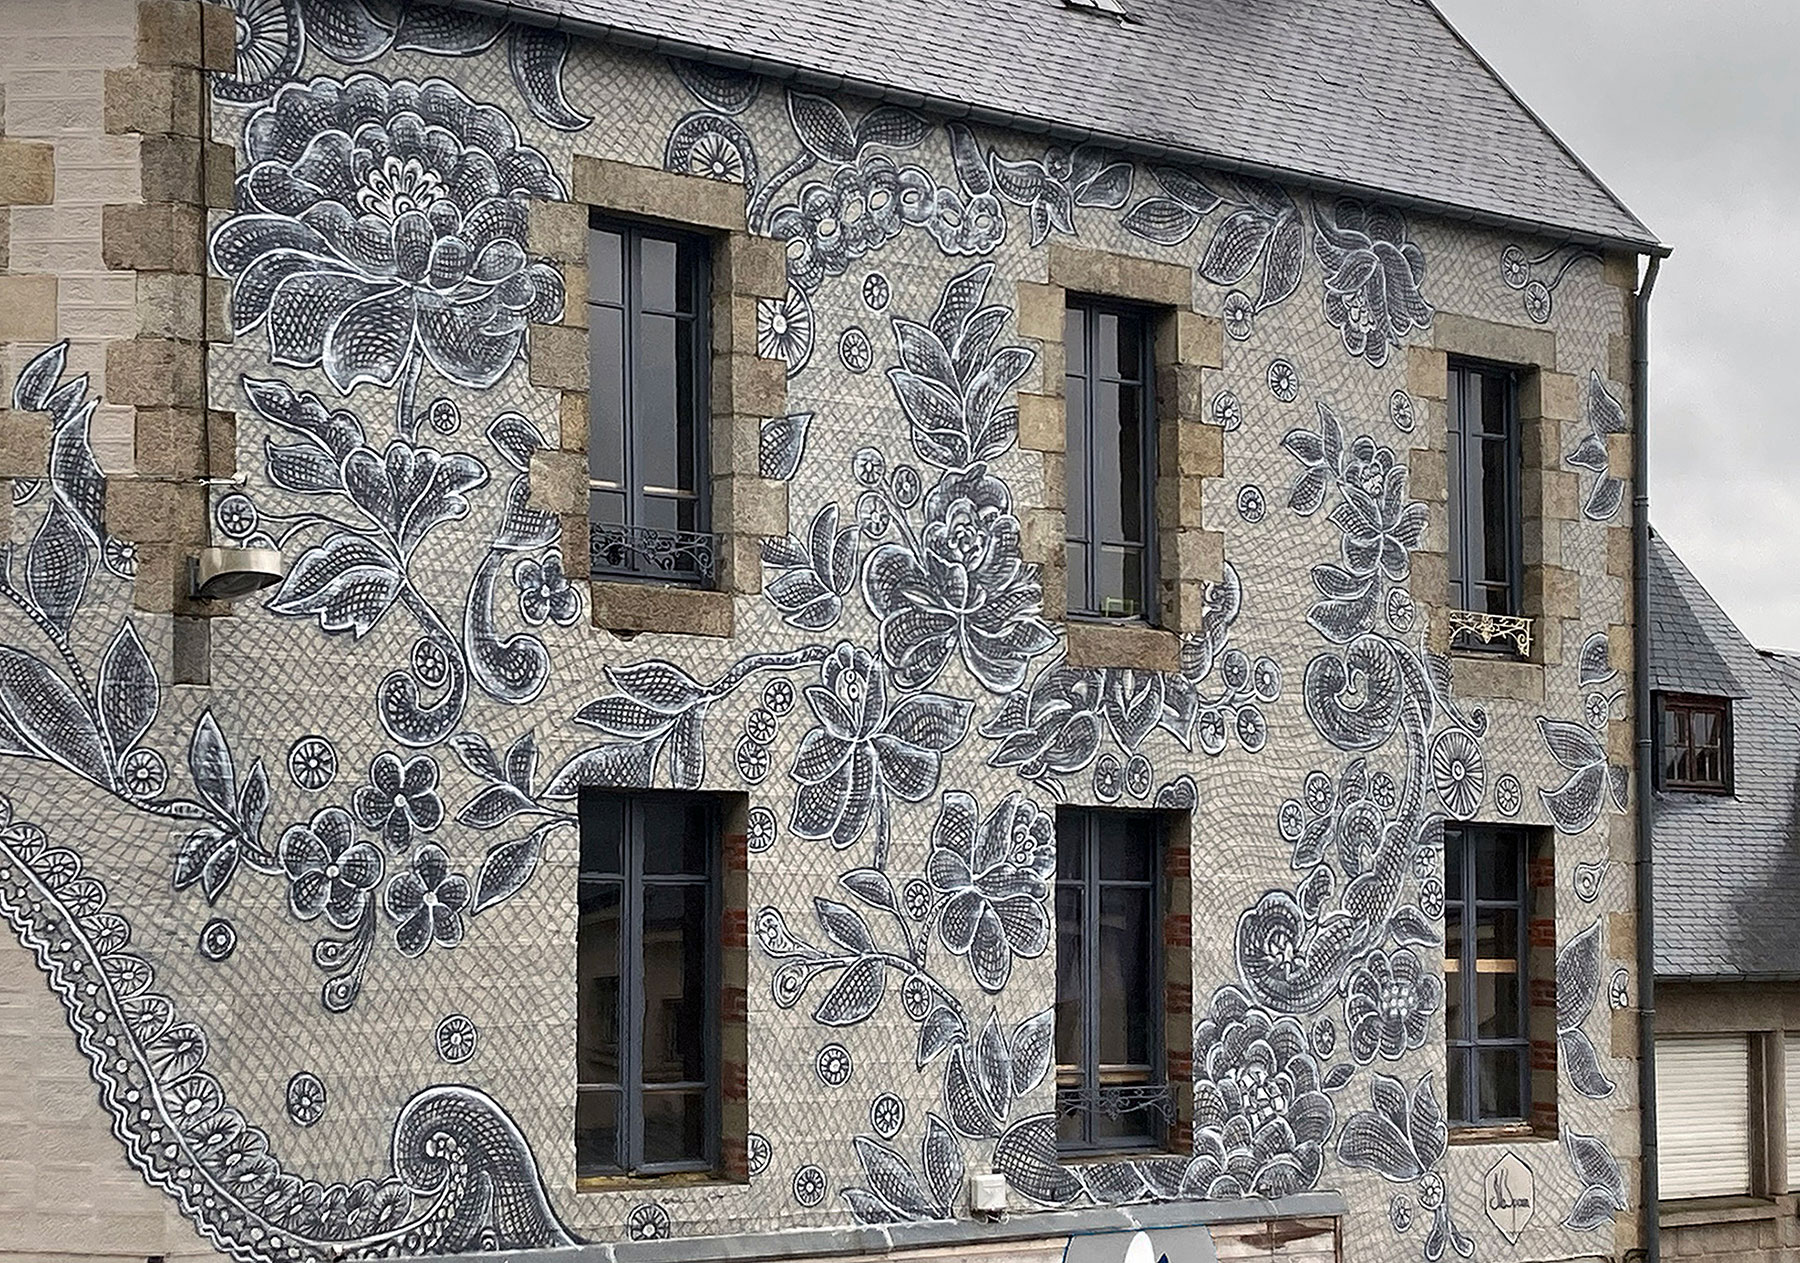 Delicados encajes pintados transforma la fachada de un edificio en Francia